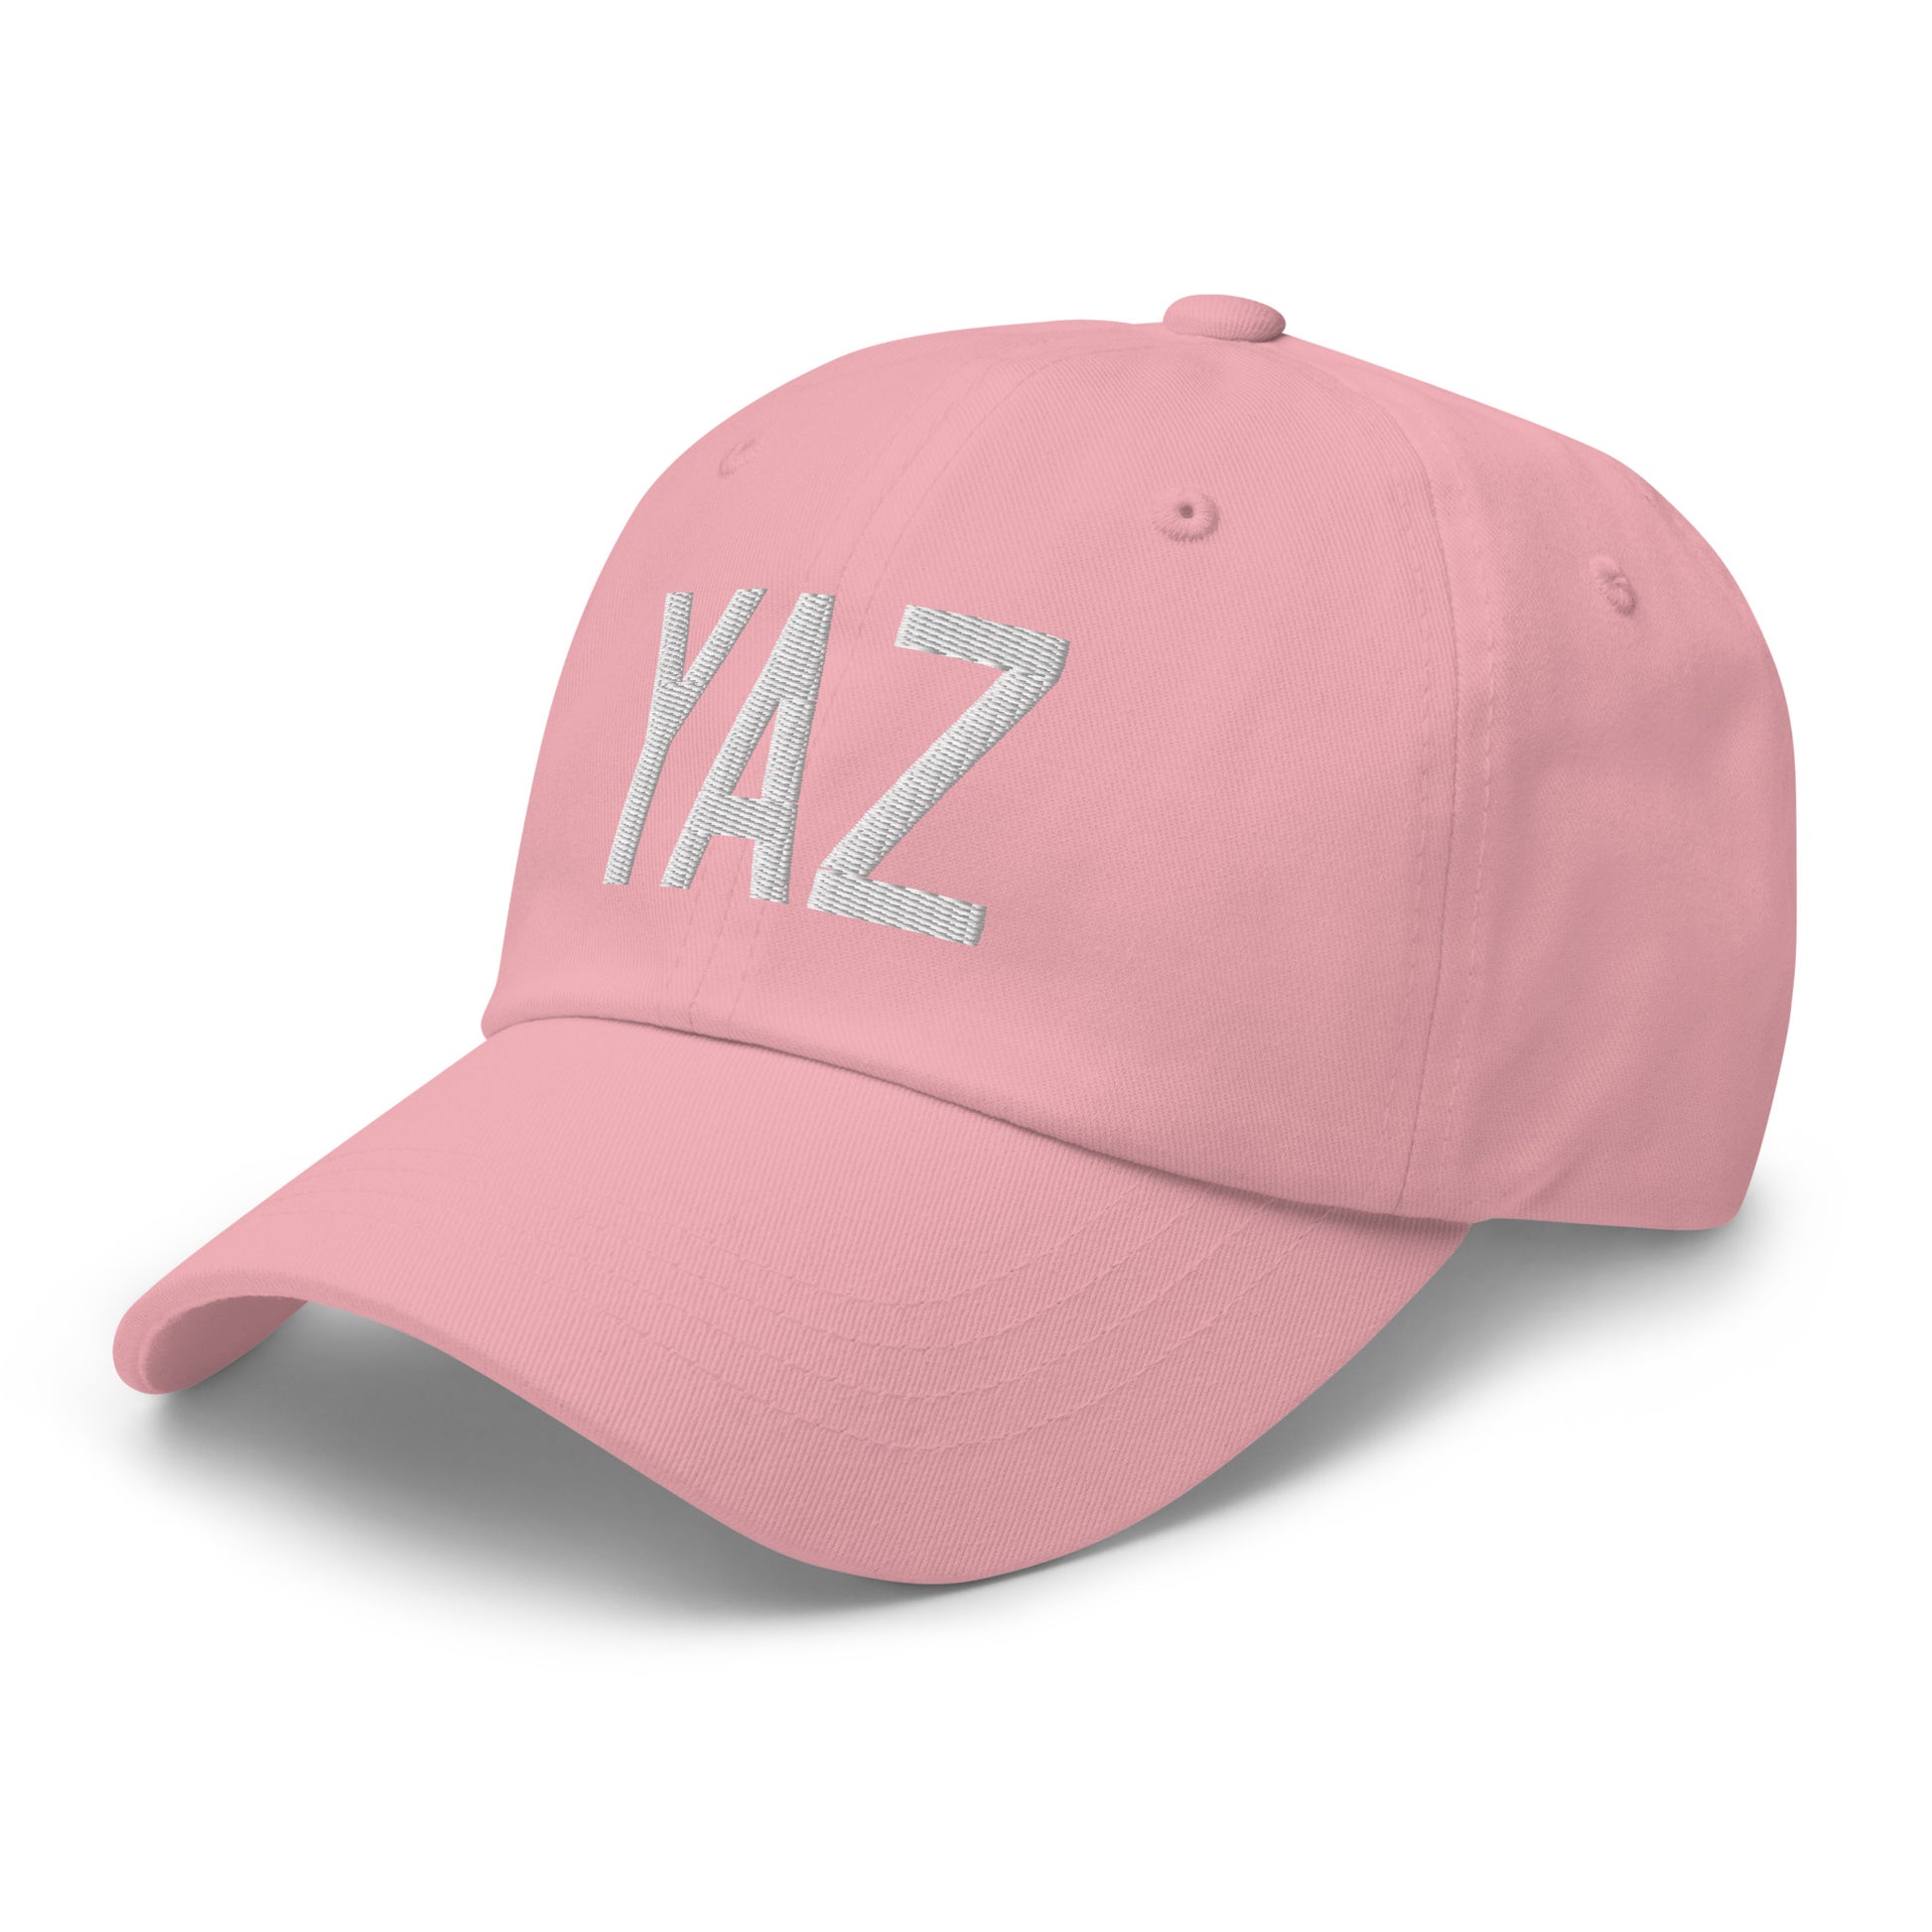 Airport Code Baseball Cap - White • YAZ Tofino • YHM Designs - Image 27